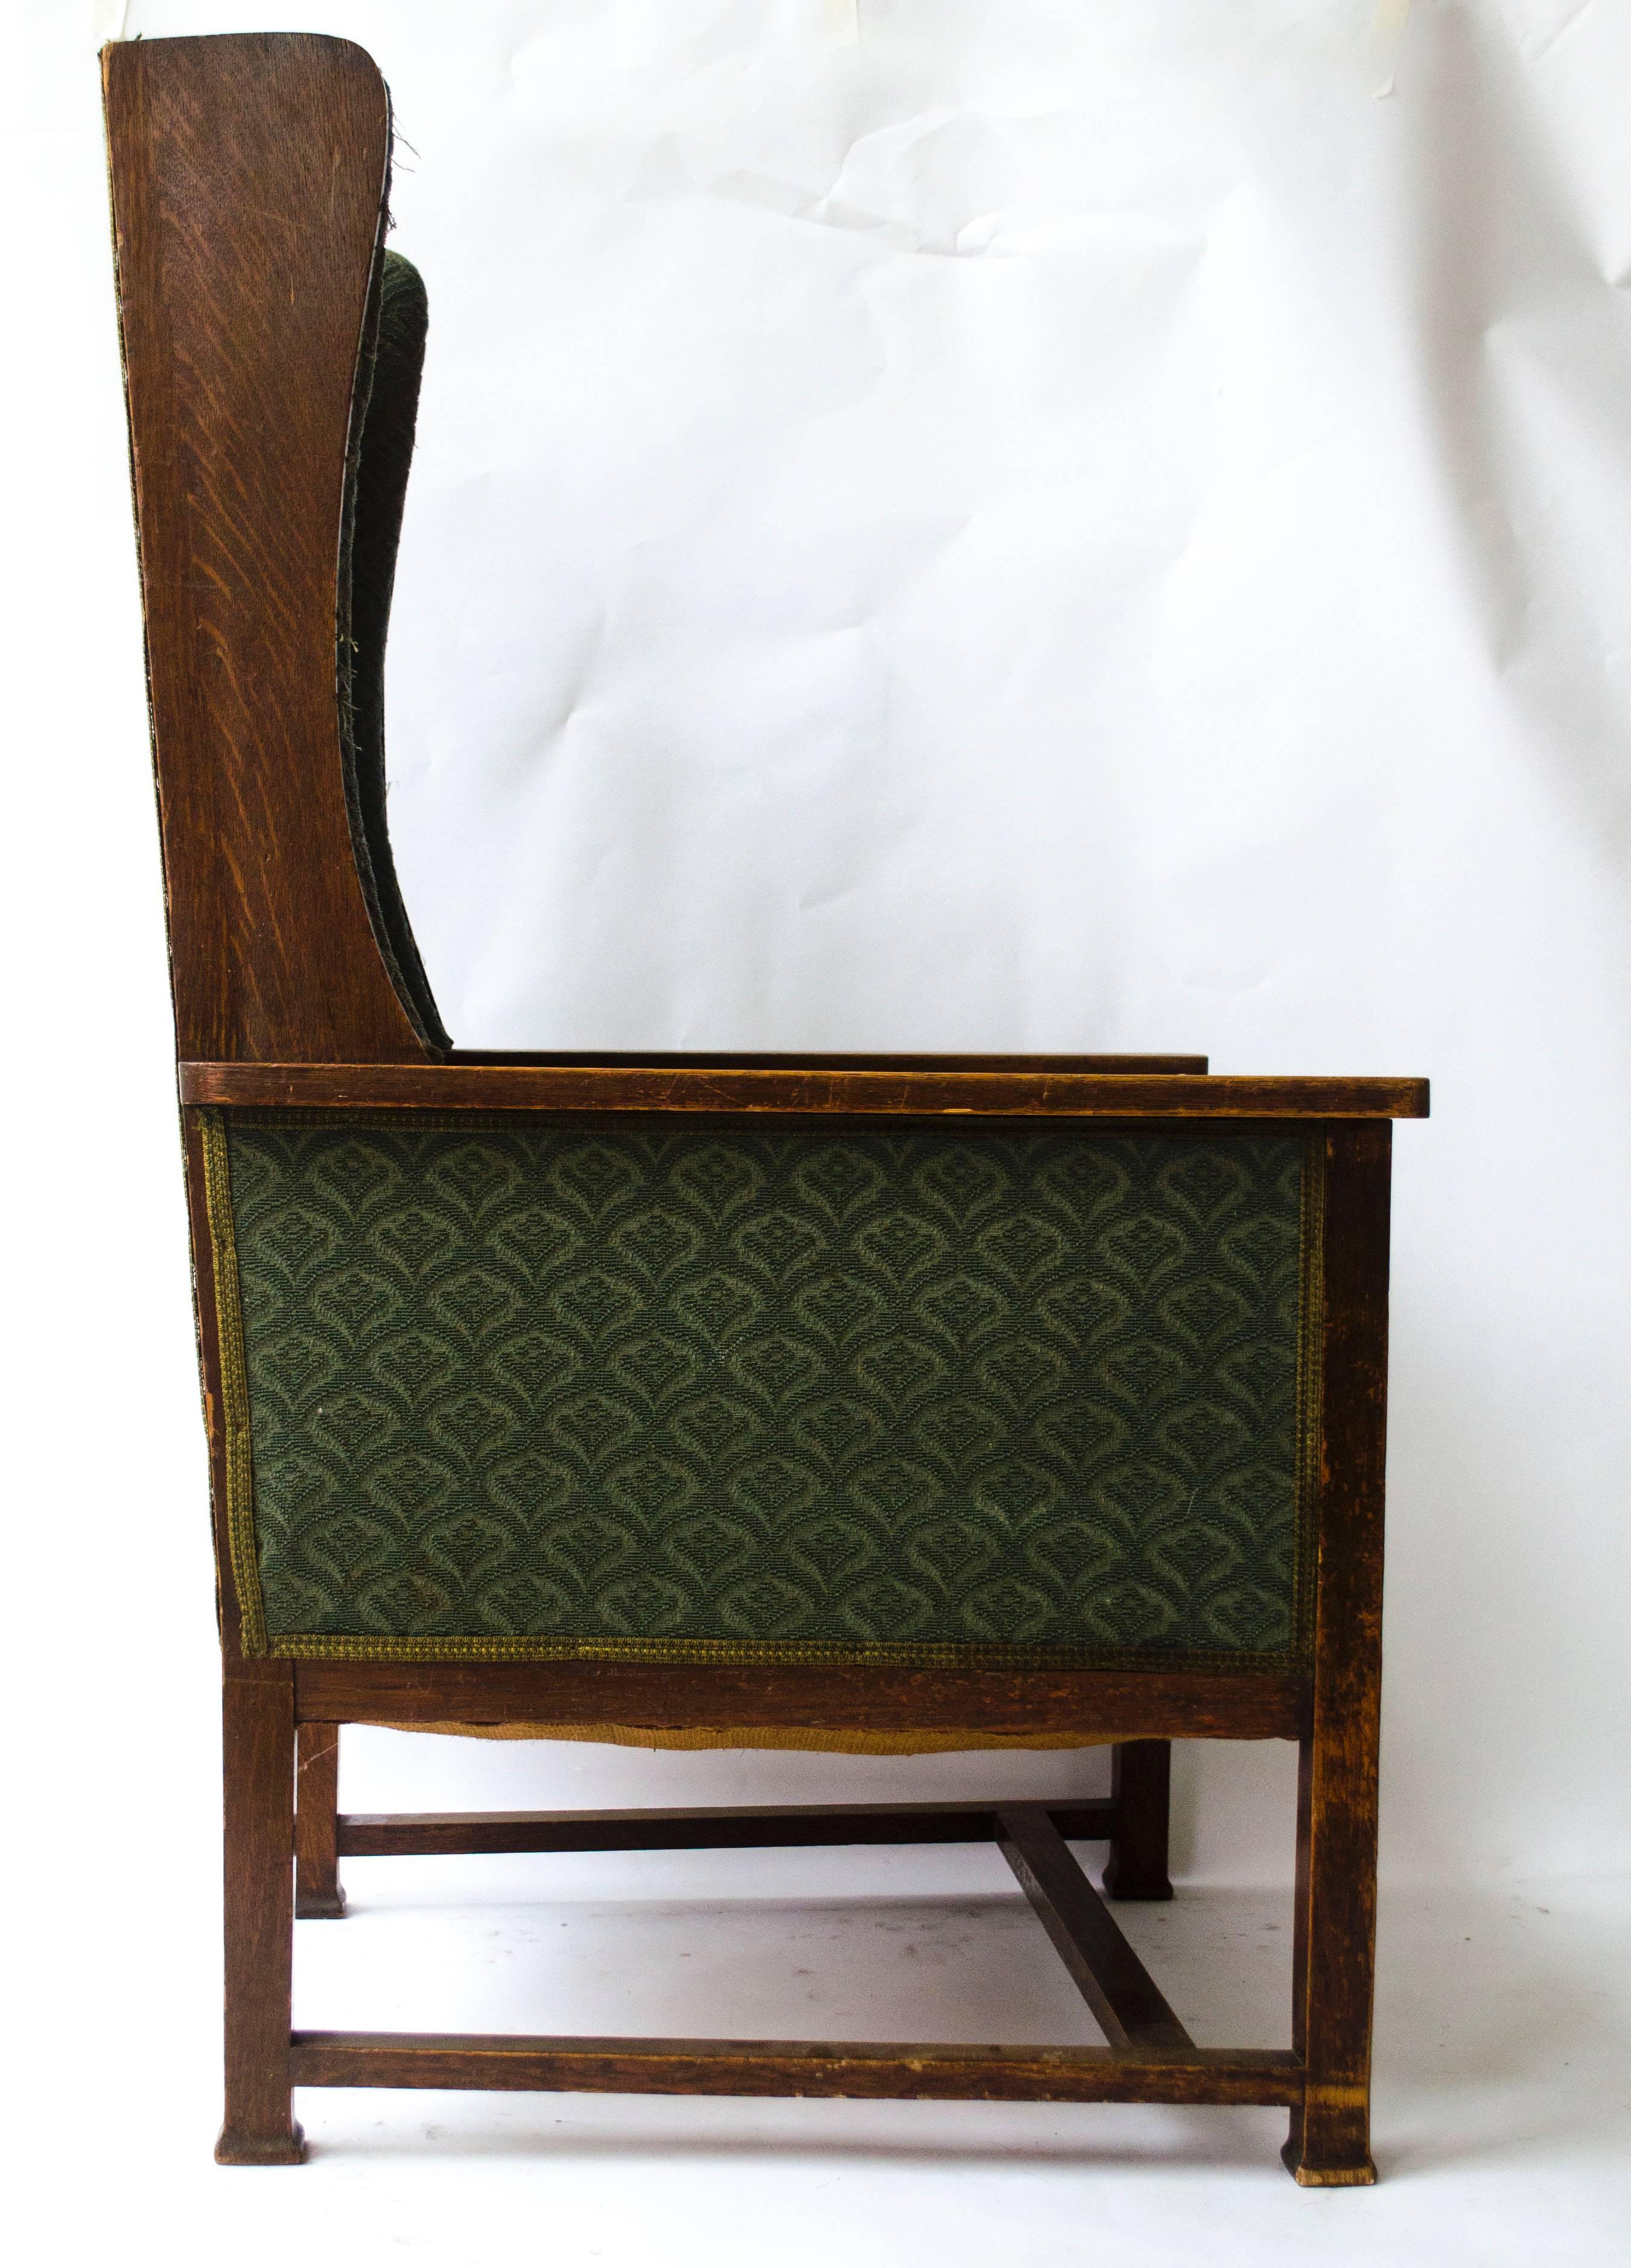 Mackay Hugh Baillie Scott (1865-1945), Fauteuil de salon à haut dossier en chêne, les supports d'accoudoirs avec des panneaux incrustés en damier, sur des pieds de forme carrée. 
Deux fauteuils identiques à celui-ci, réalisés par M. H. Baillie